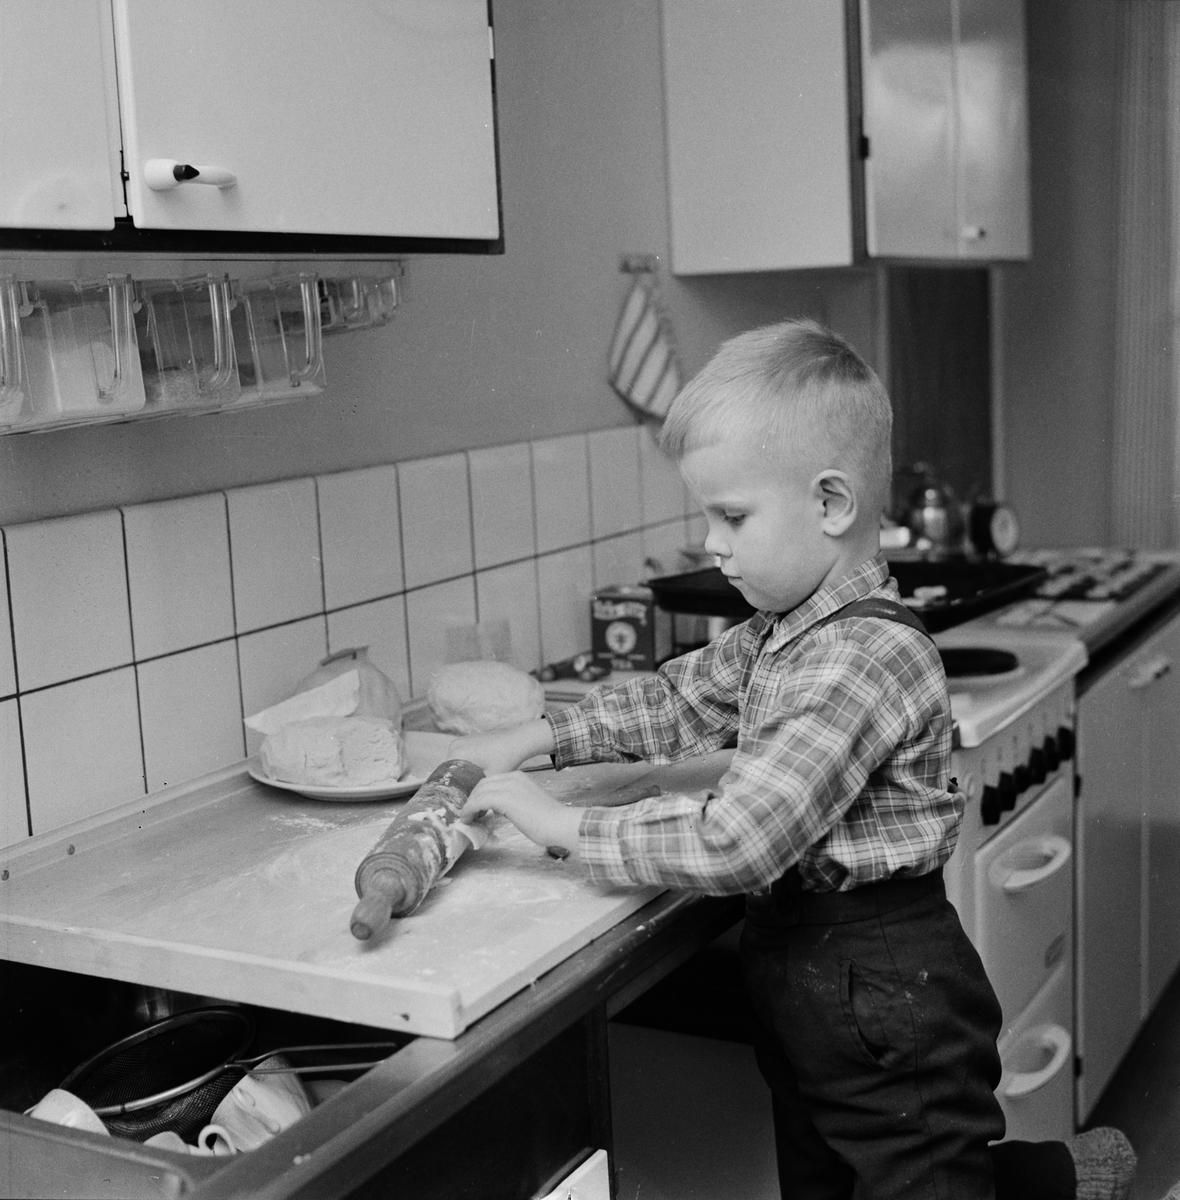 Arne Mattisson bakar kakor